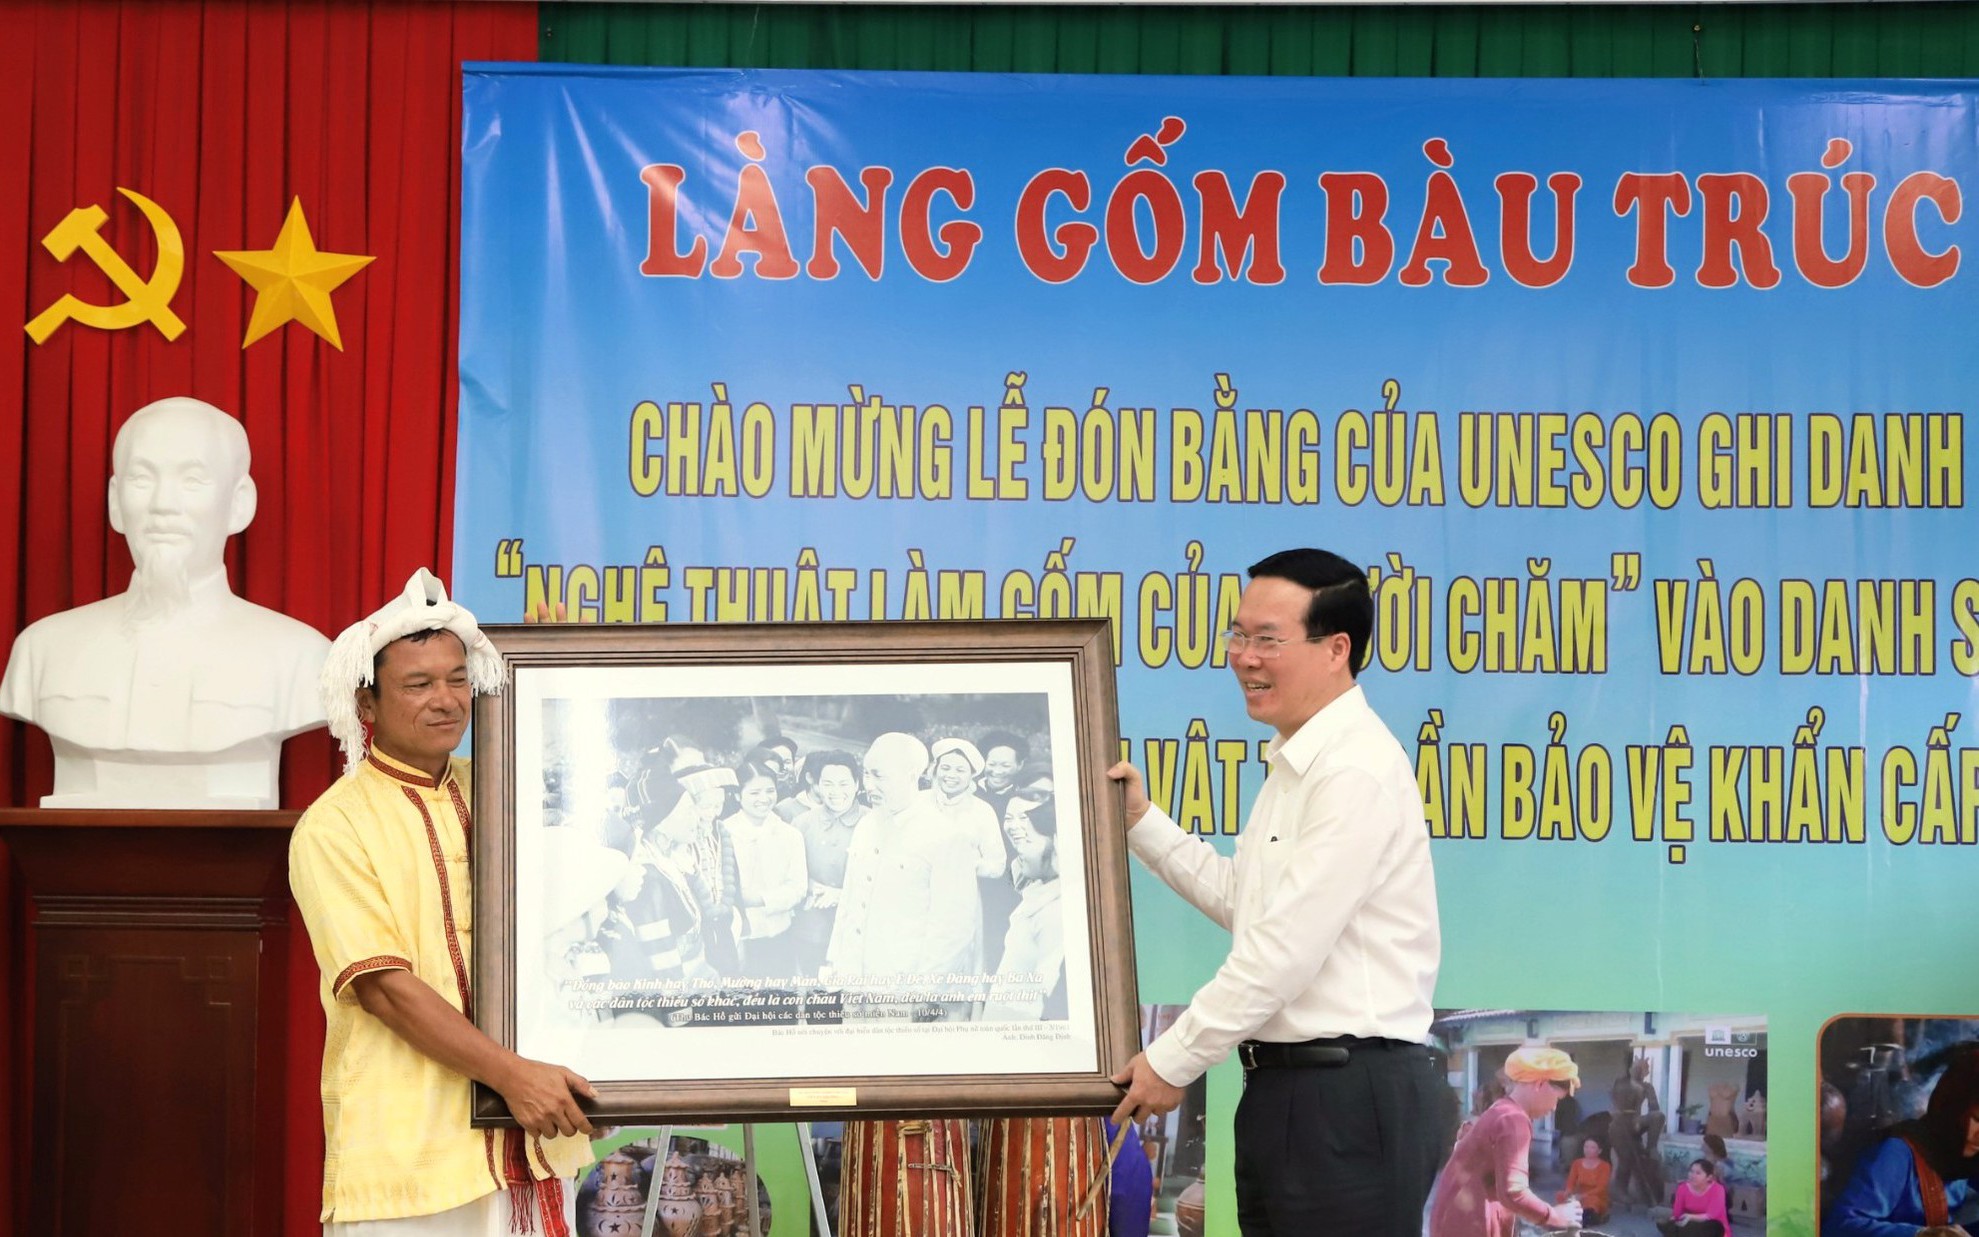 Chủ tịch nước Võ Văn Thưởng thăm làng gốm Bàu Trúc ở Ninh Thuận